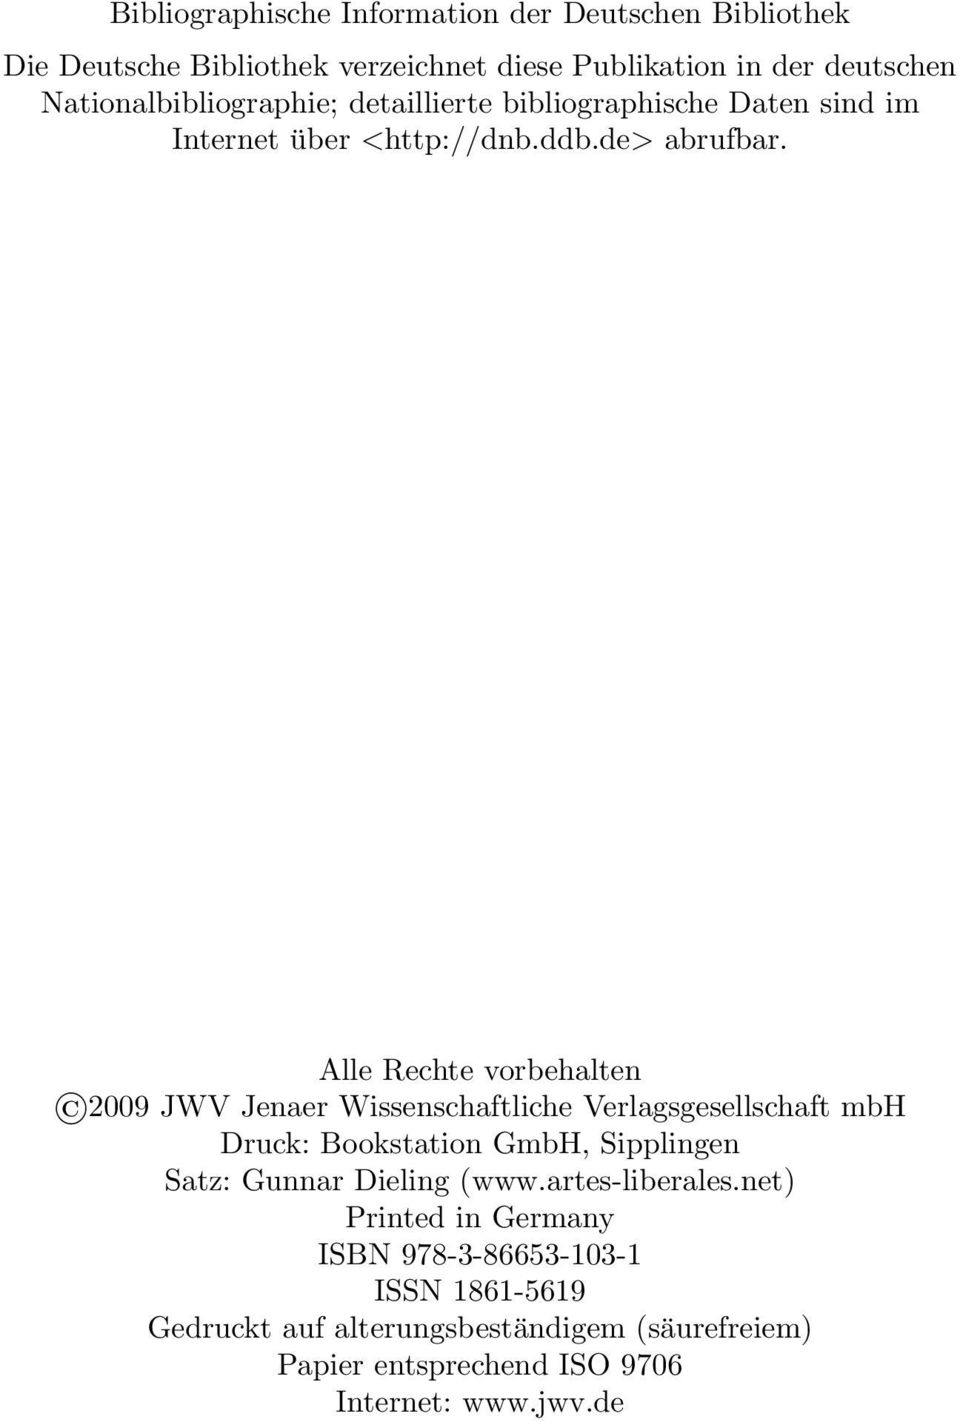 Alle Rechte vorbehalten 2009 JWV Jenaer Wissenschaftliche Verlagsgesellschaft mbh Druck: Bookstation GmbH, Sipplingen Satz: Gunnar Dieling